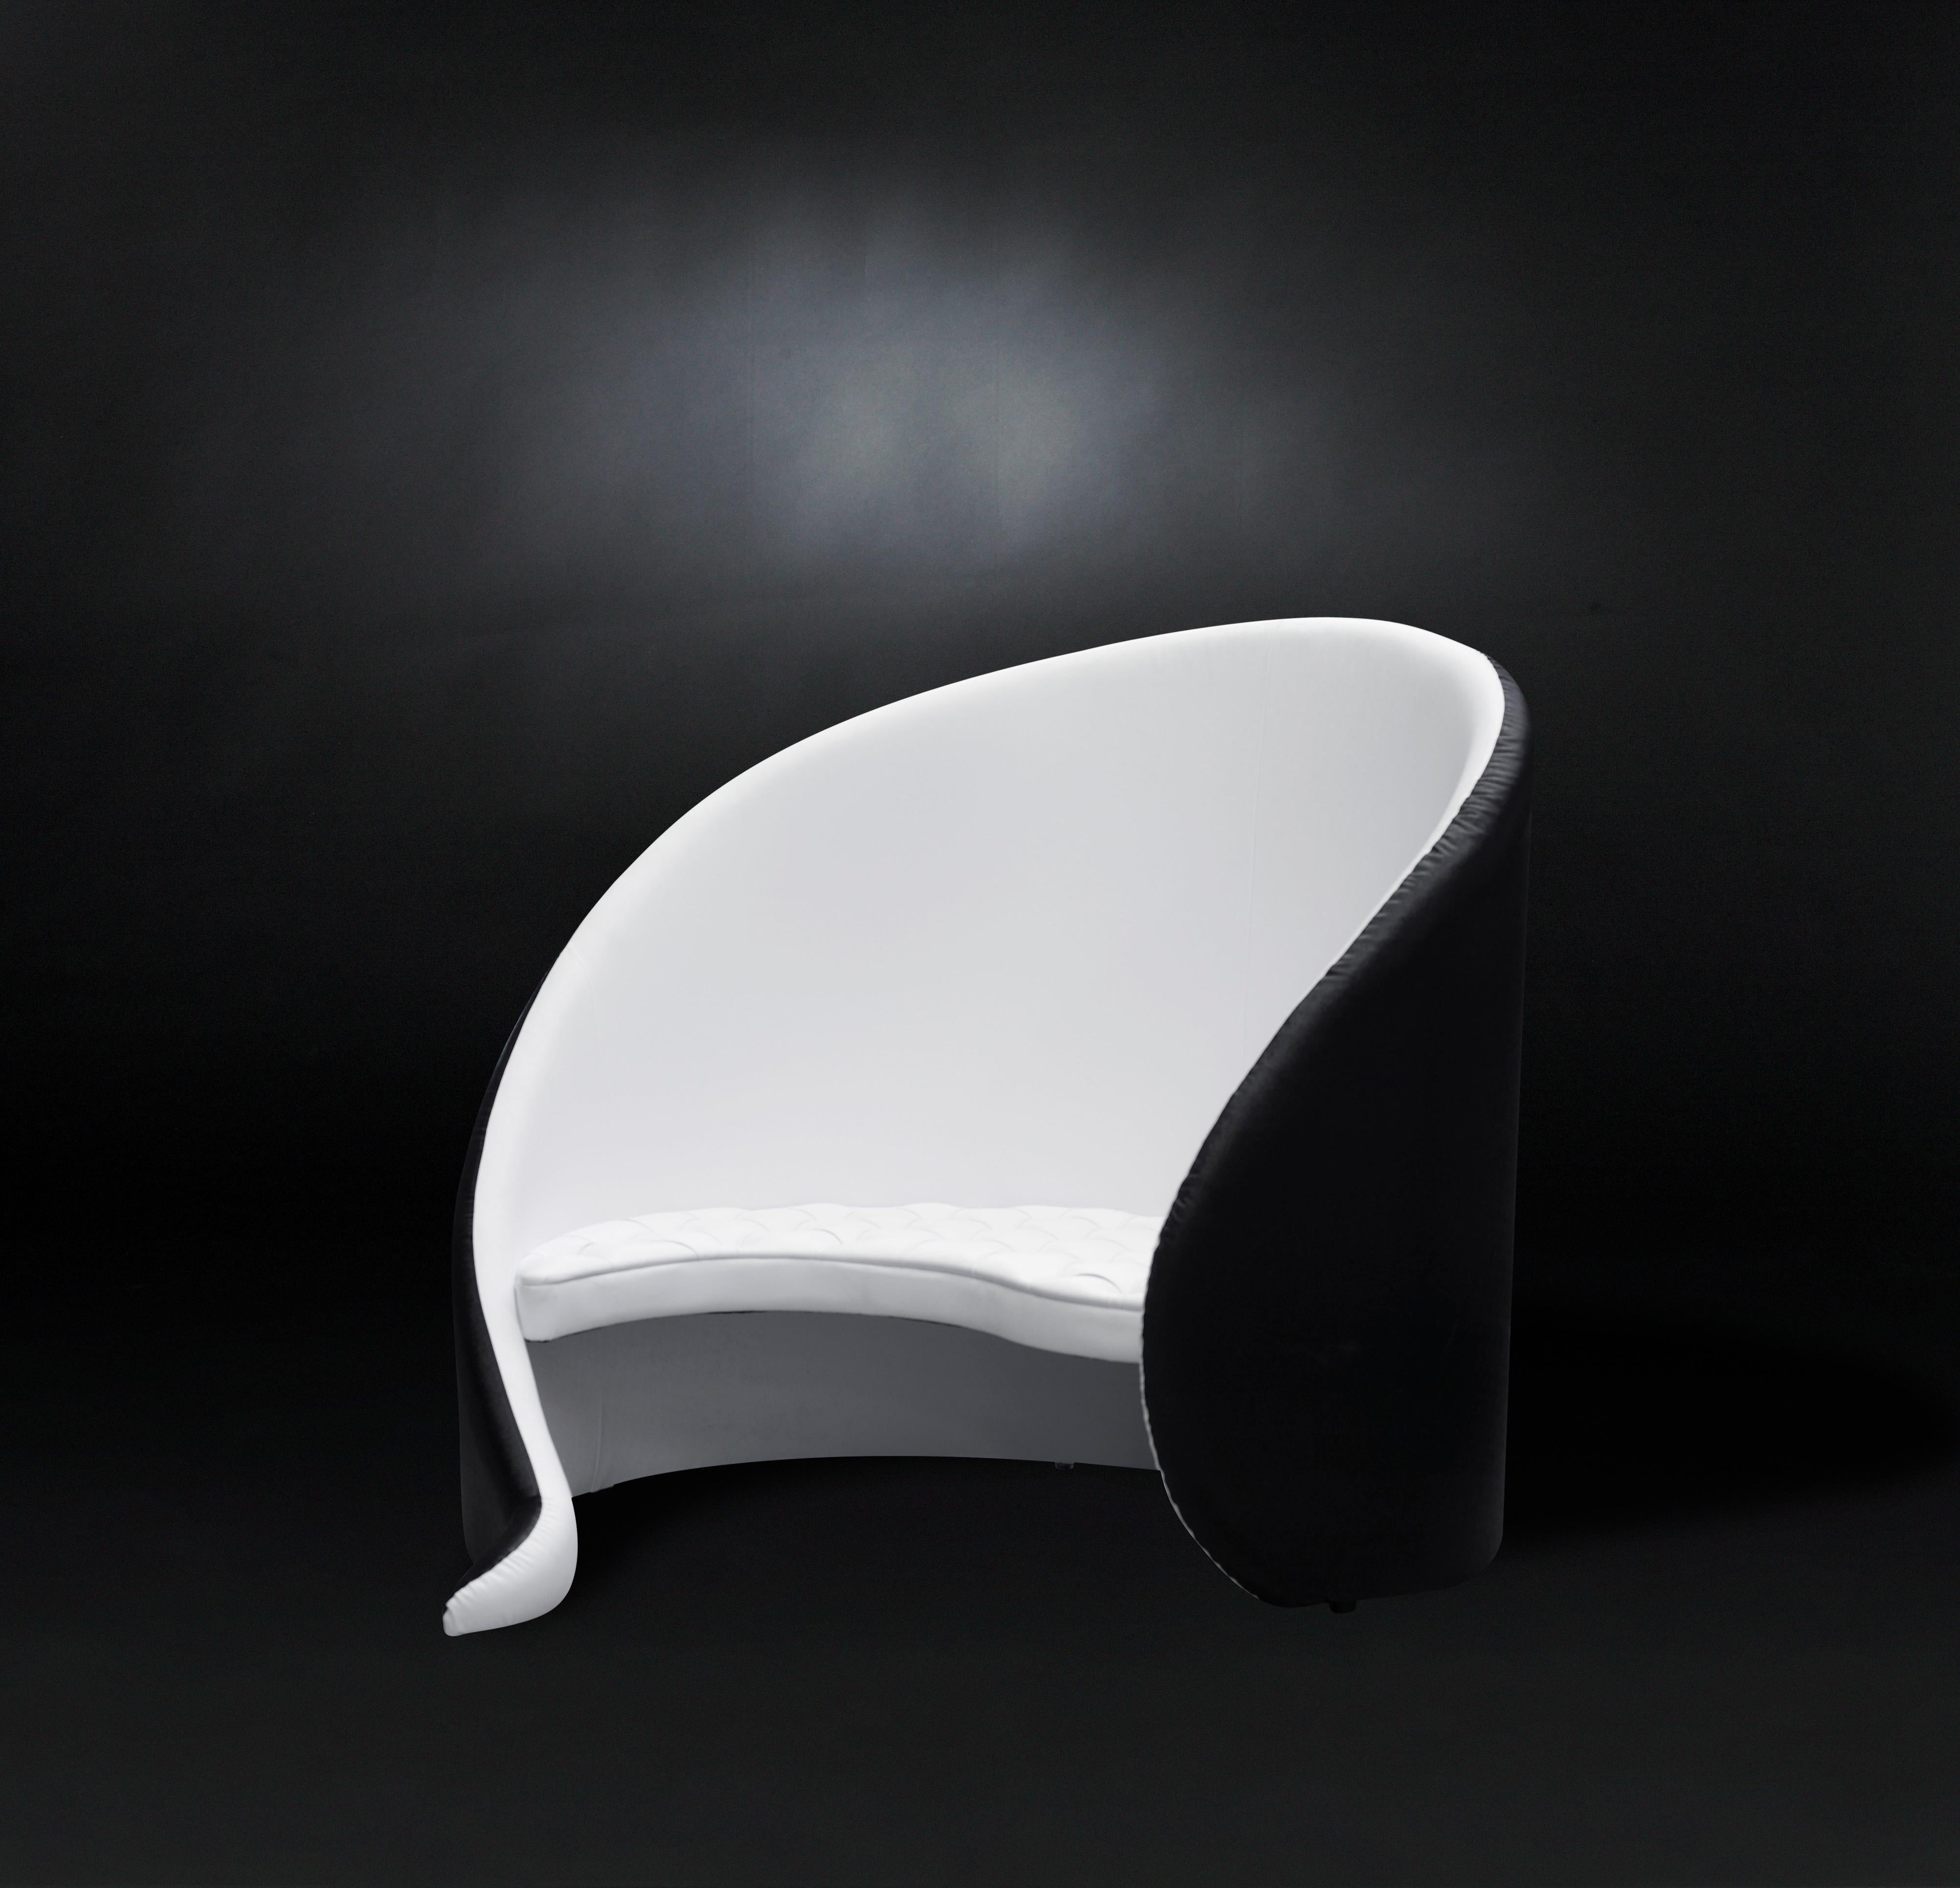 VG-Möbel stehen für Luxus im Sinne von Exklusivität, Distinktion und hoher Qualität. Sie sind das Ergebnis eines anspruchsvollen und exklusiven Designs mit einer starken Identität und sind das Ergebnis einer sorgfältigen Beachtung der typischen